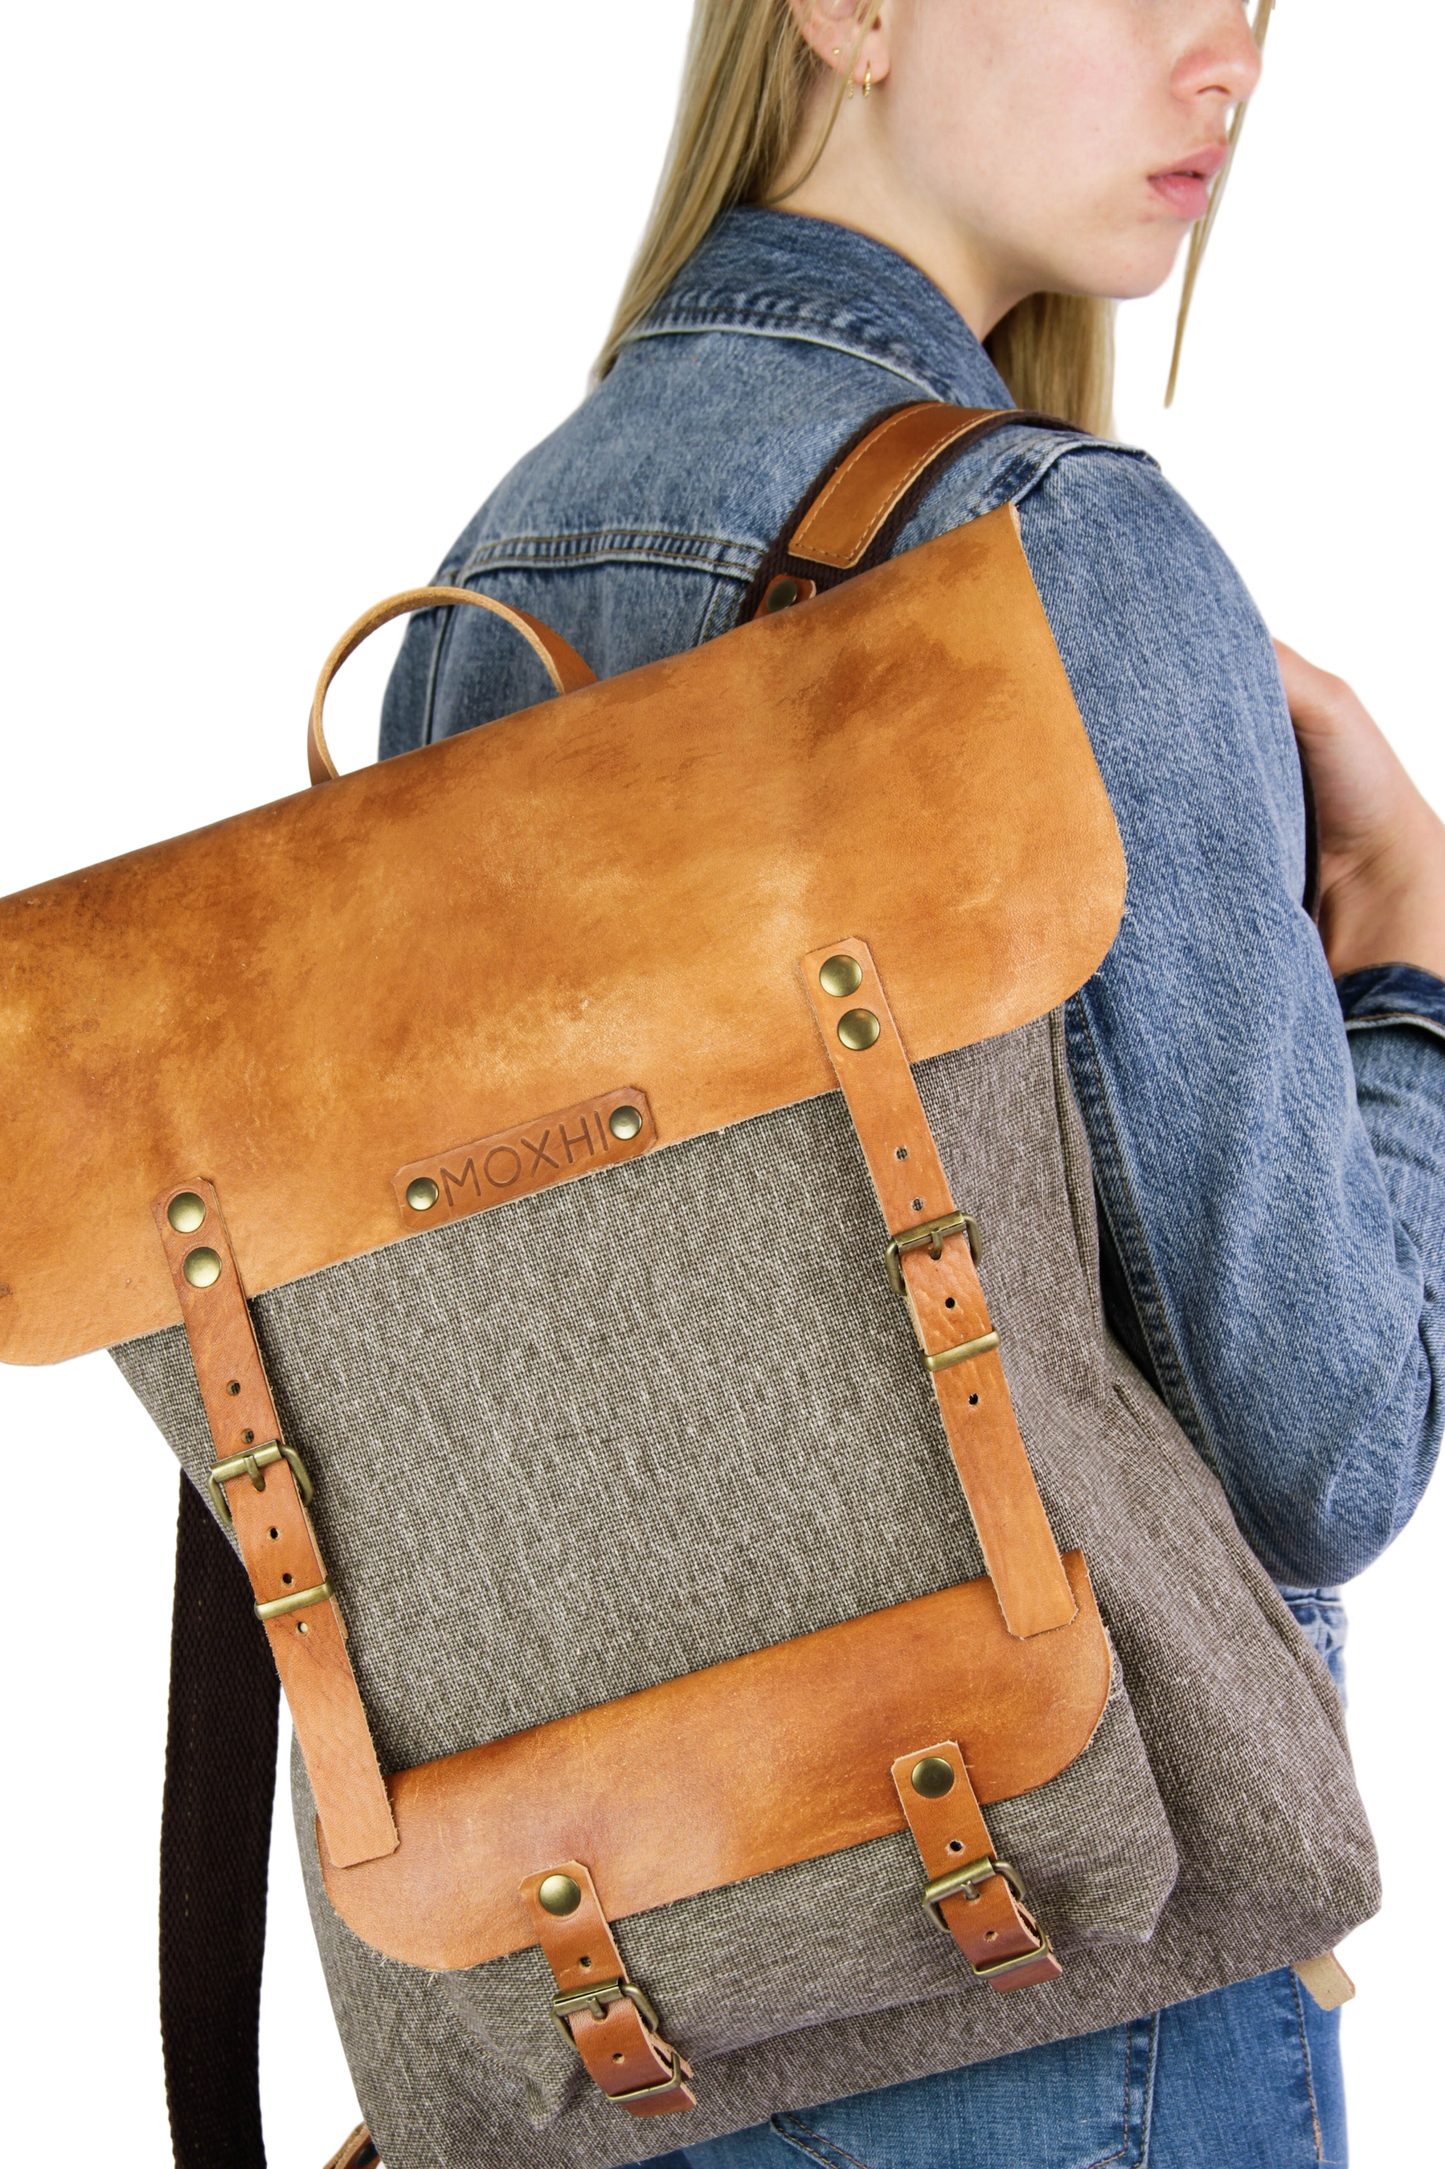 Viajero classic artisanal backpack handmade women